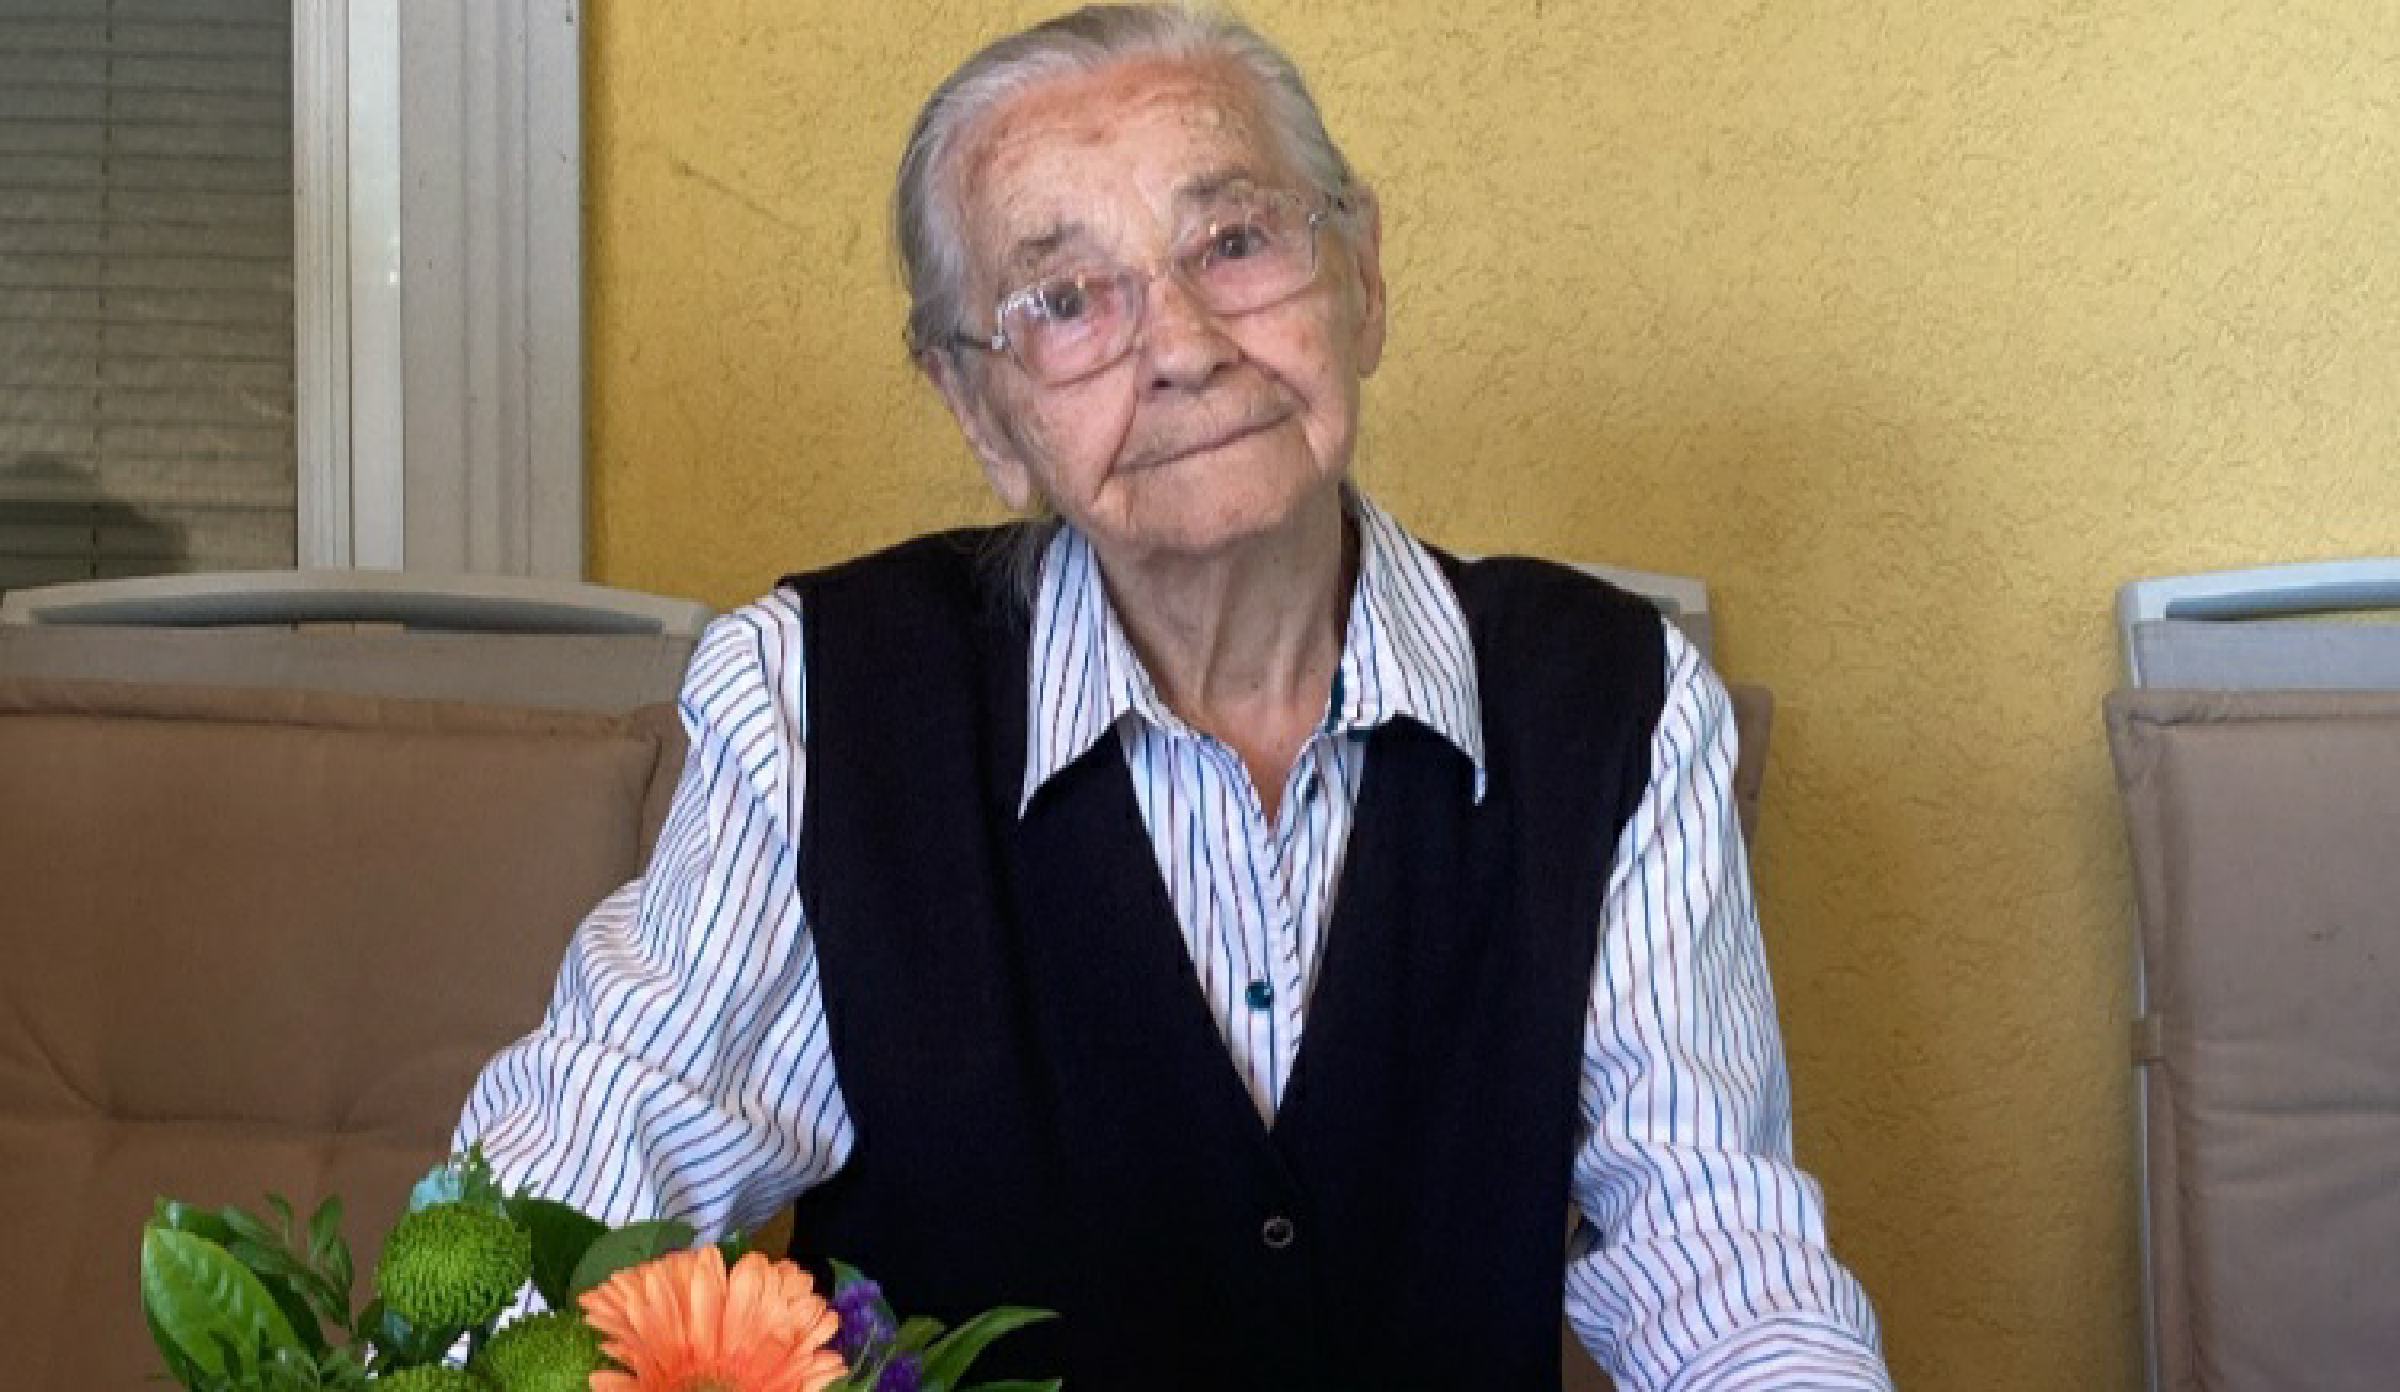 FOTO: 101-letnica le enkrat v življenju ostala v bolnišnici